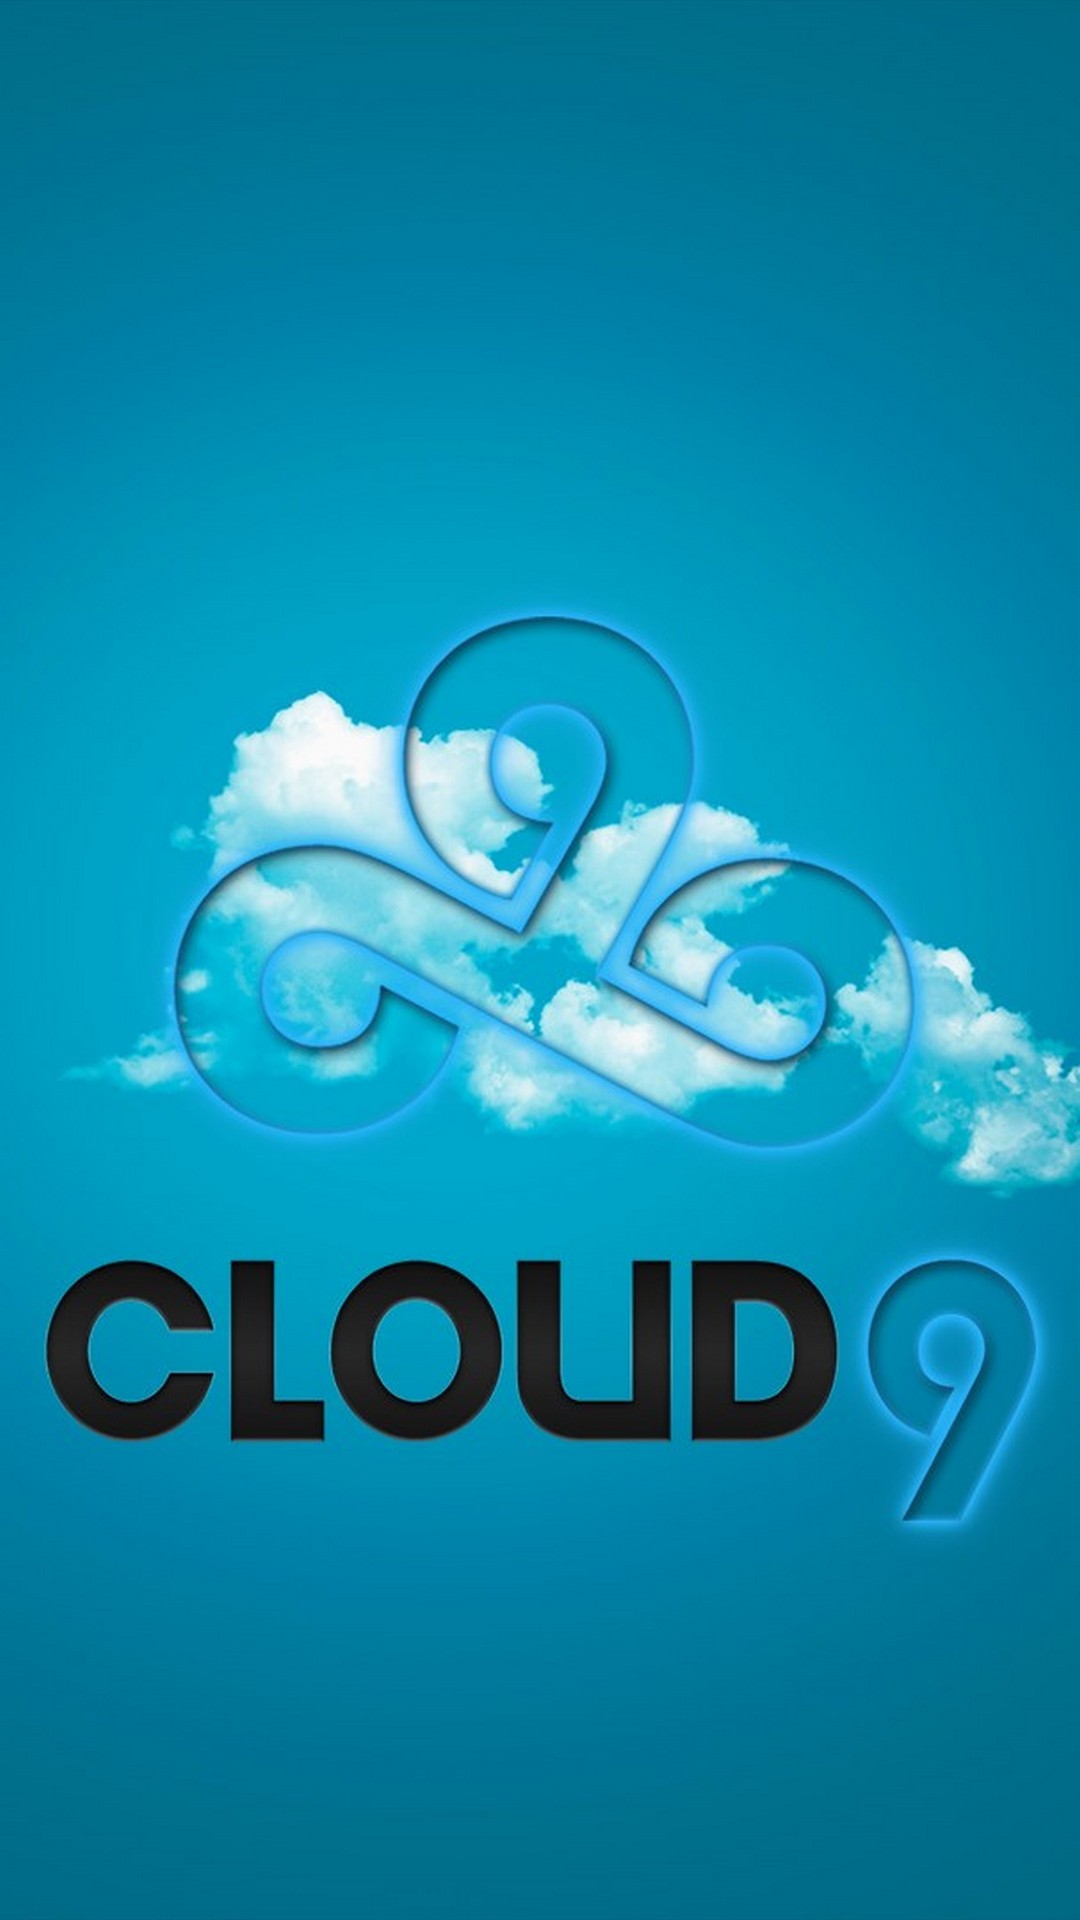 nuage 9 fond d'écran iphone,aqua,texte,bleu,police de caractère,turquoise